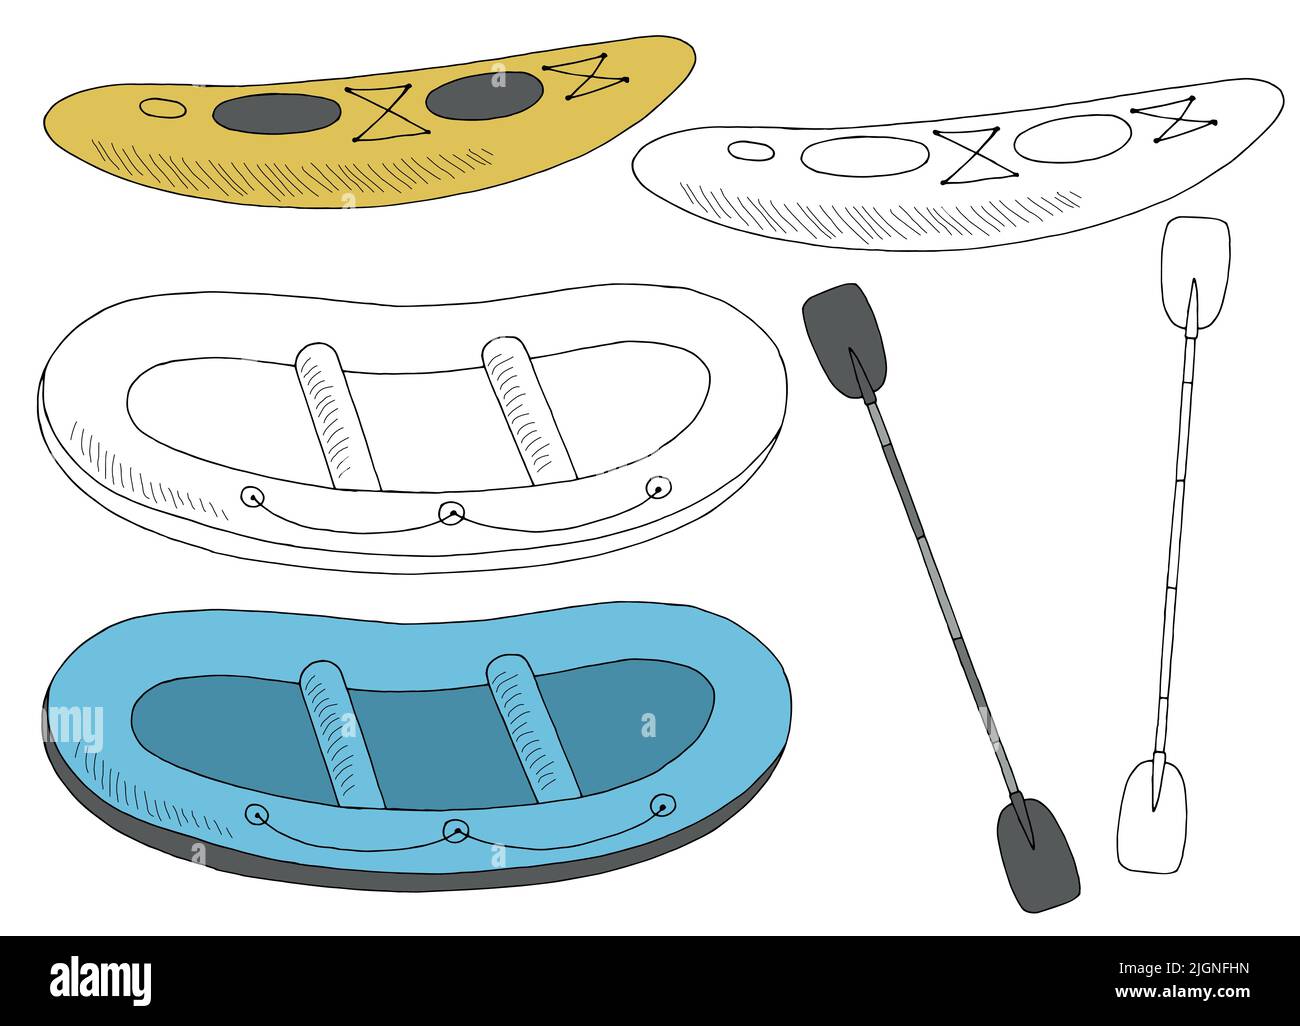 Sport barco conjunto balsa kayak gráfico dibujo aislado croquis ilustración vector Ilustración del Vector